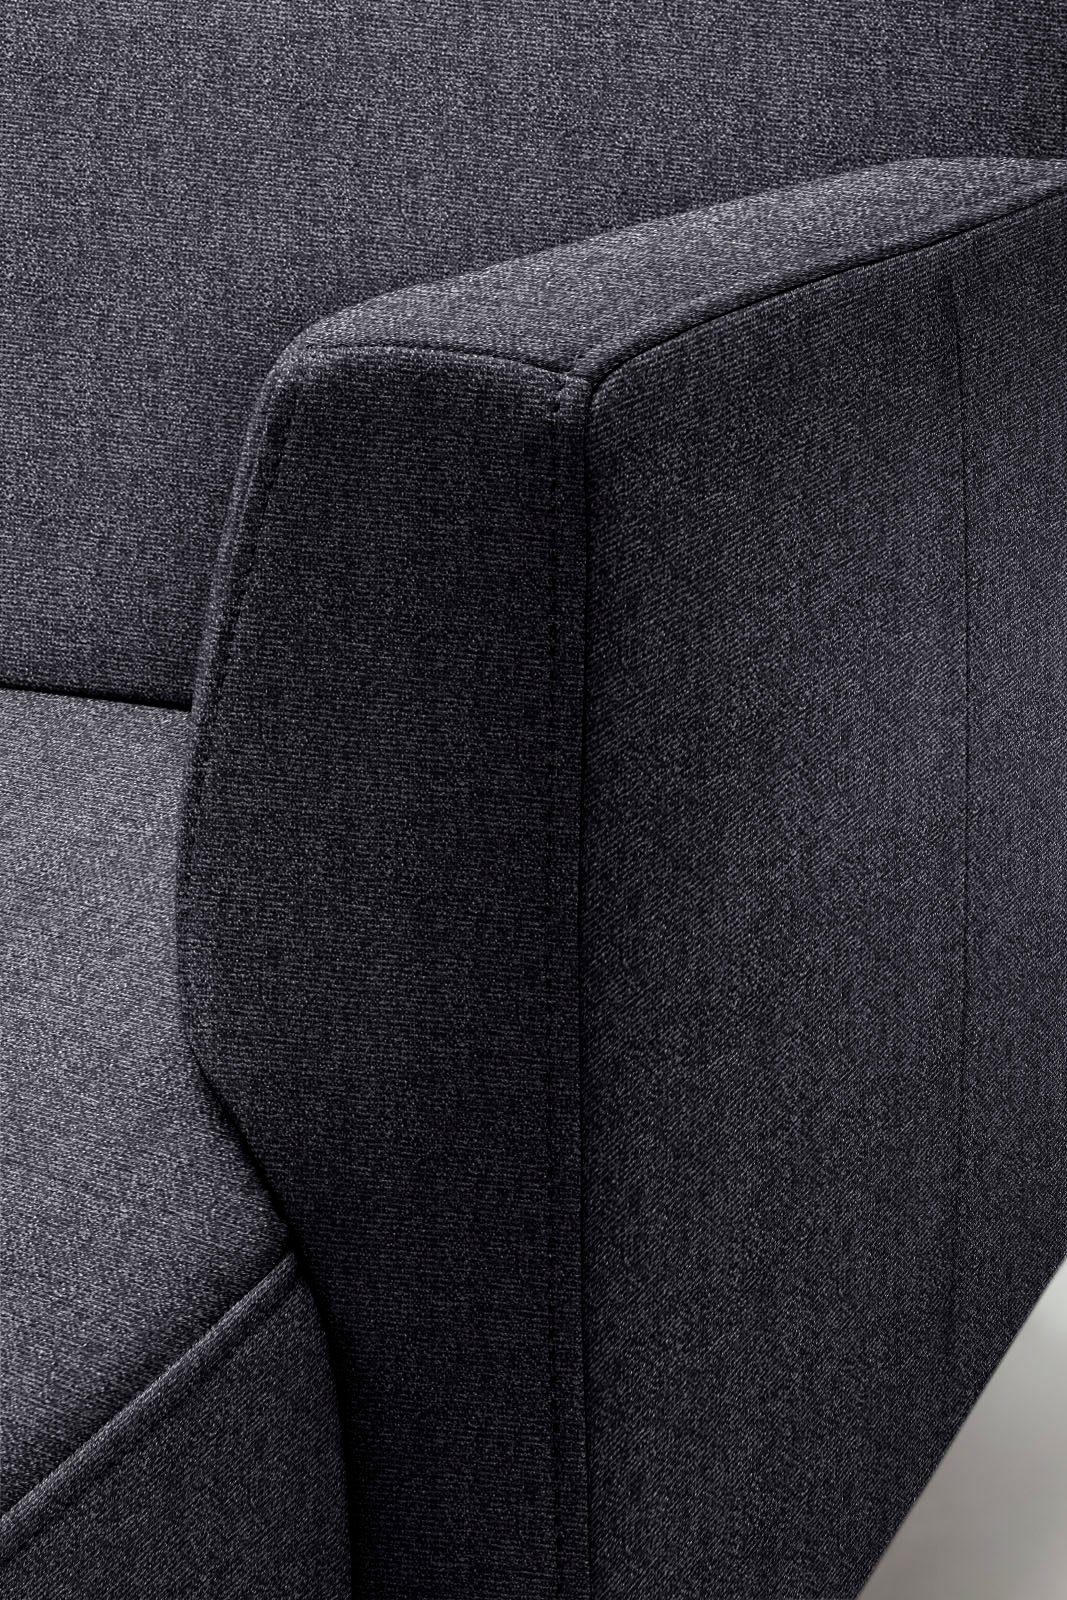 Optik, schwereloser Breite 275 cm in hs.446, hülsta sofa minimalistischer, Ecksofa